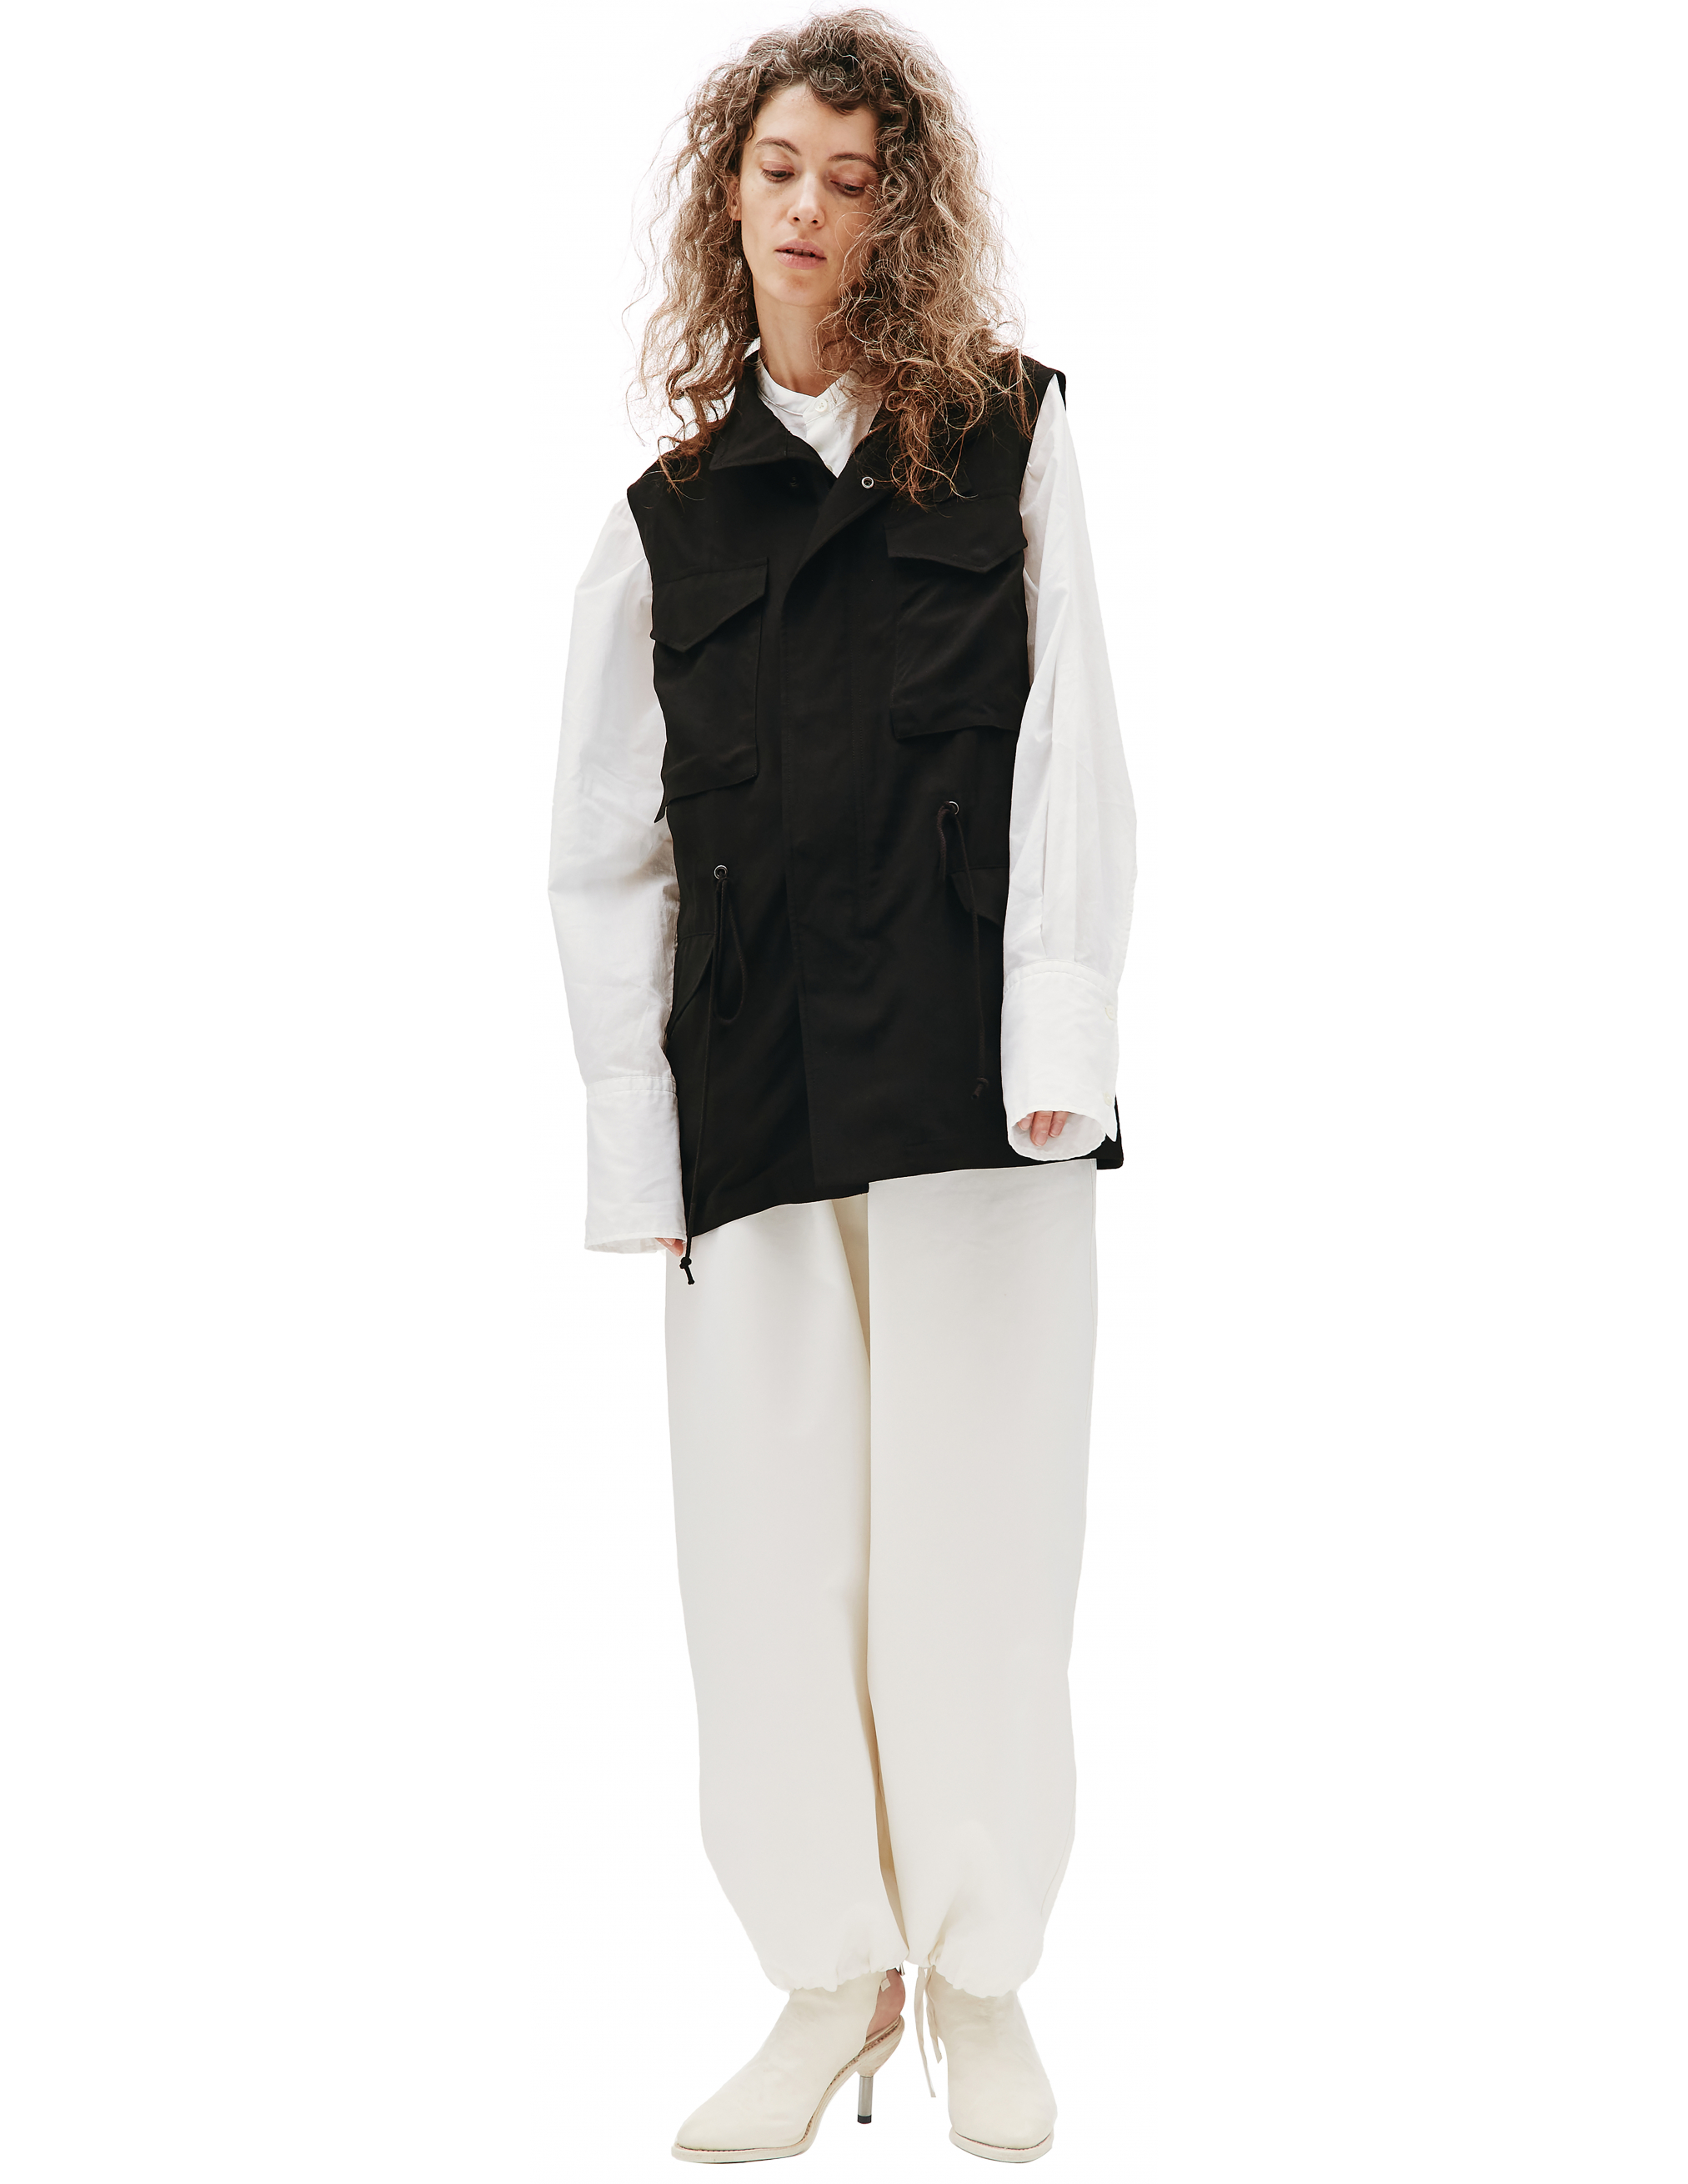 Black rayon vest Ys YD-V02-201-1, размер 2 - фото 1